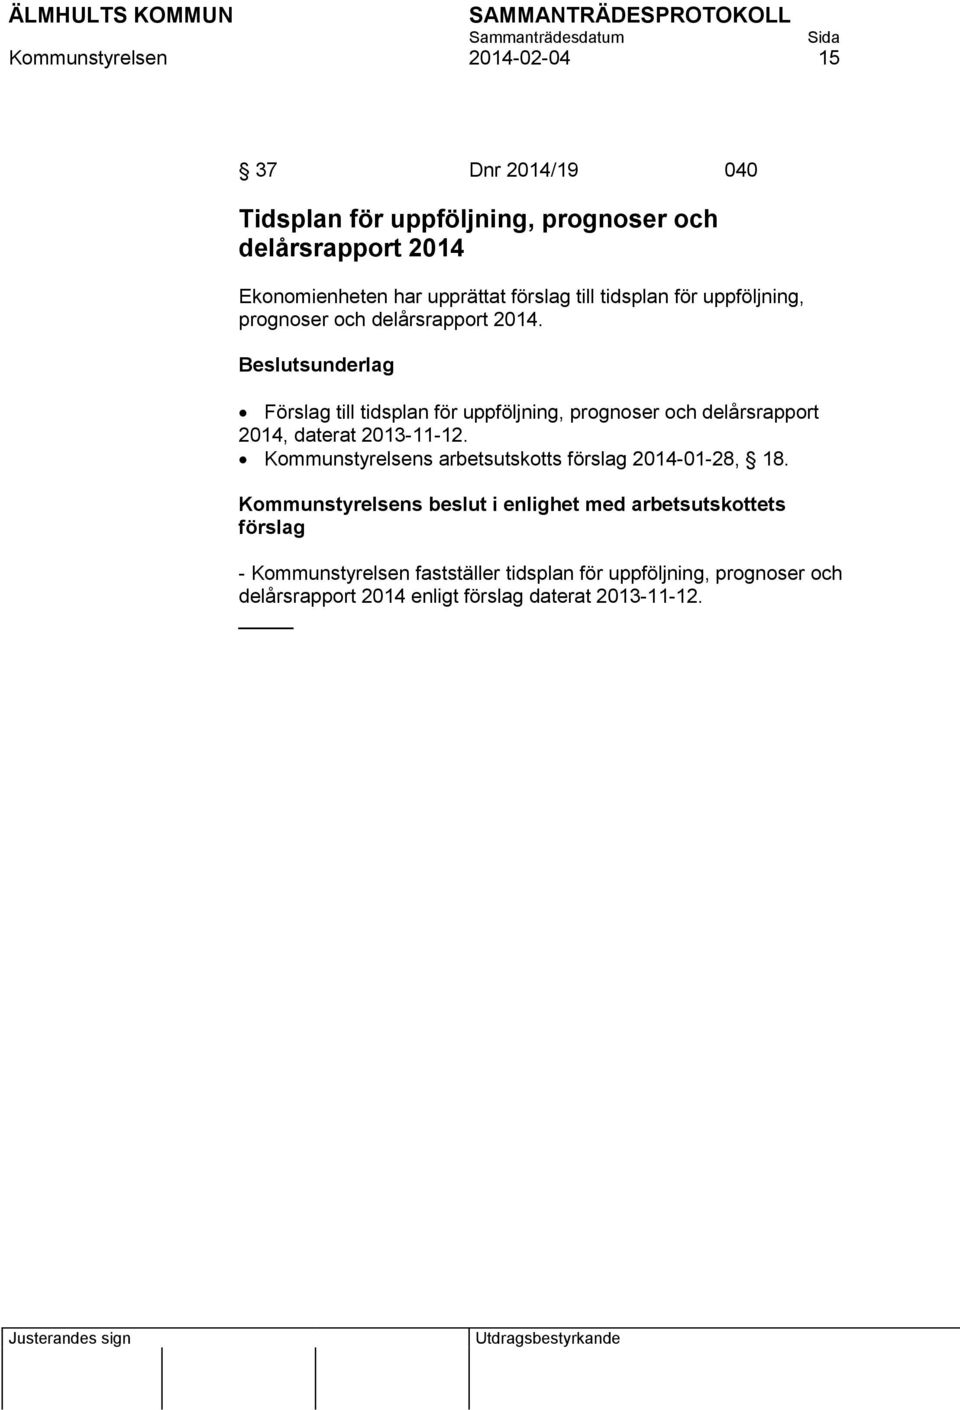 Förslag till tidsplan för uppföljning, prognoser och delårsrapport 2014, daterat 2013-11-12.